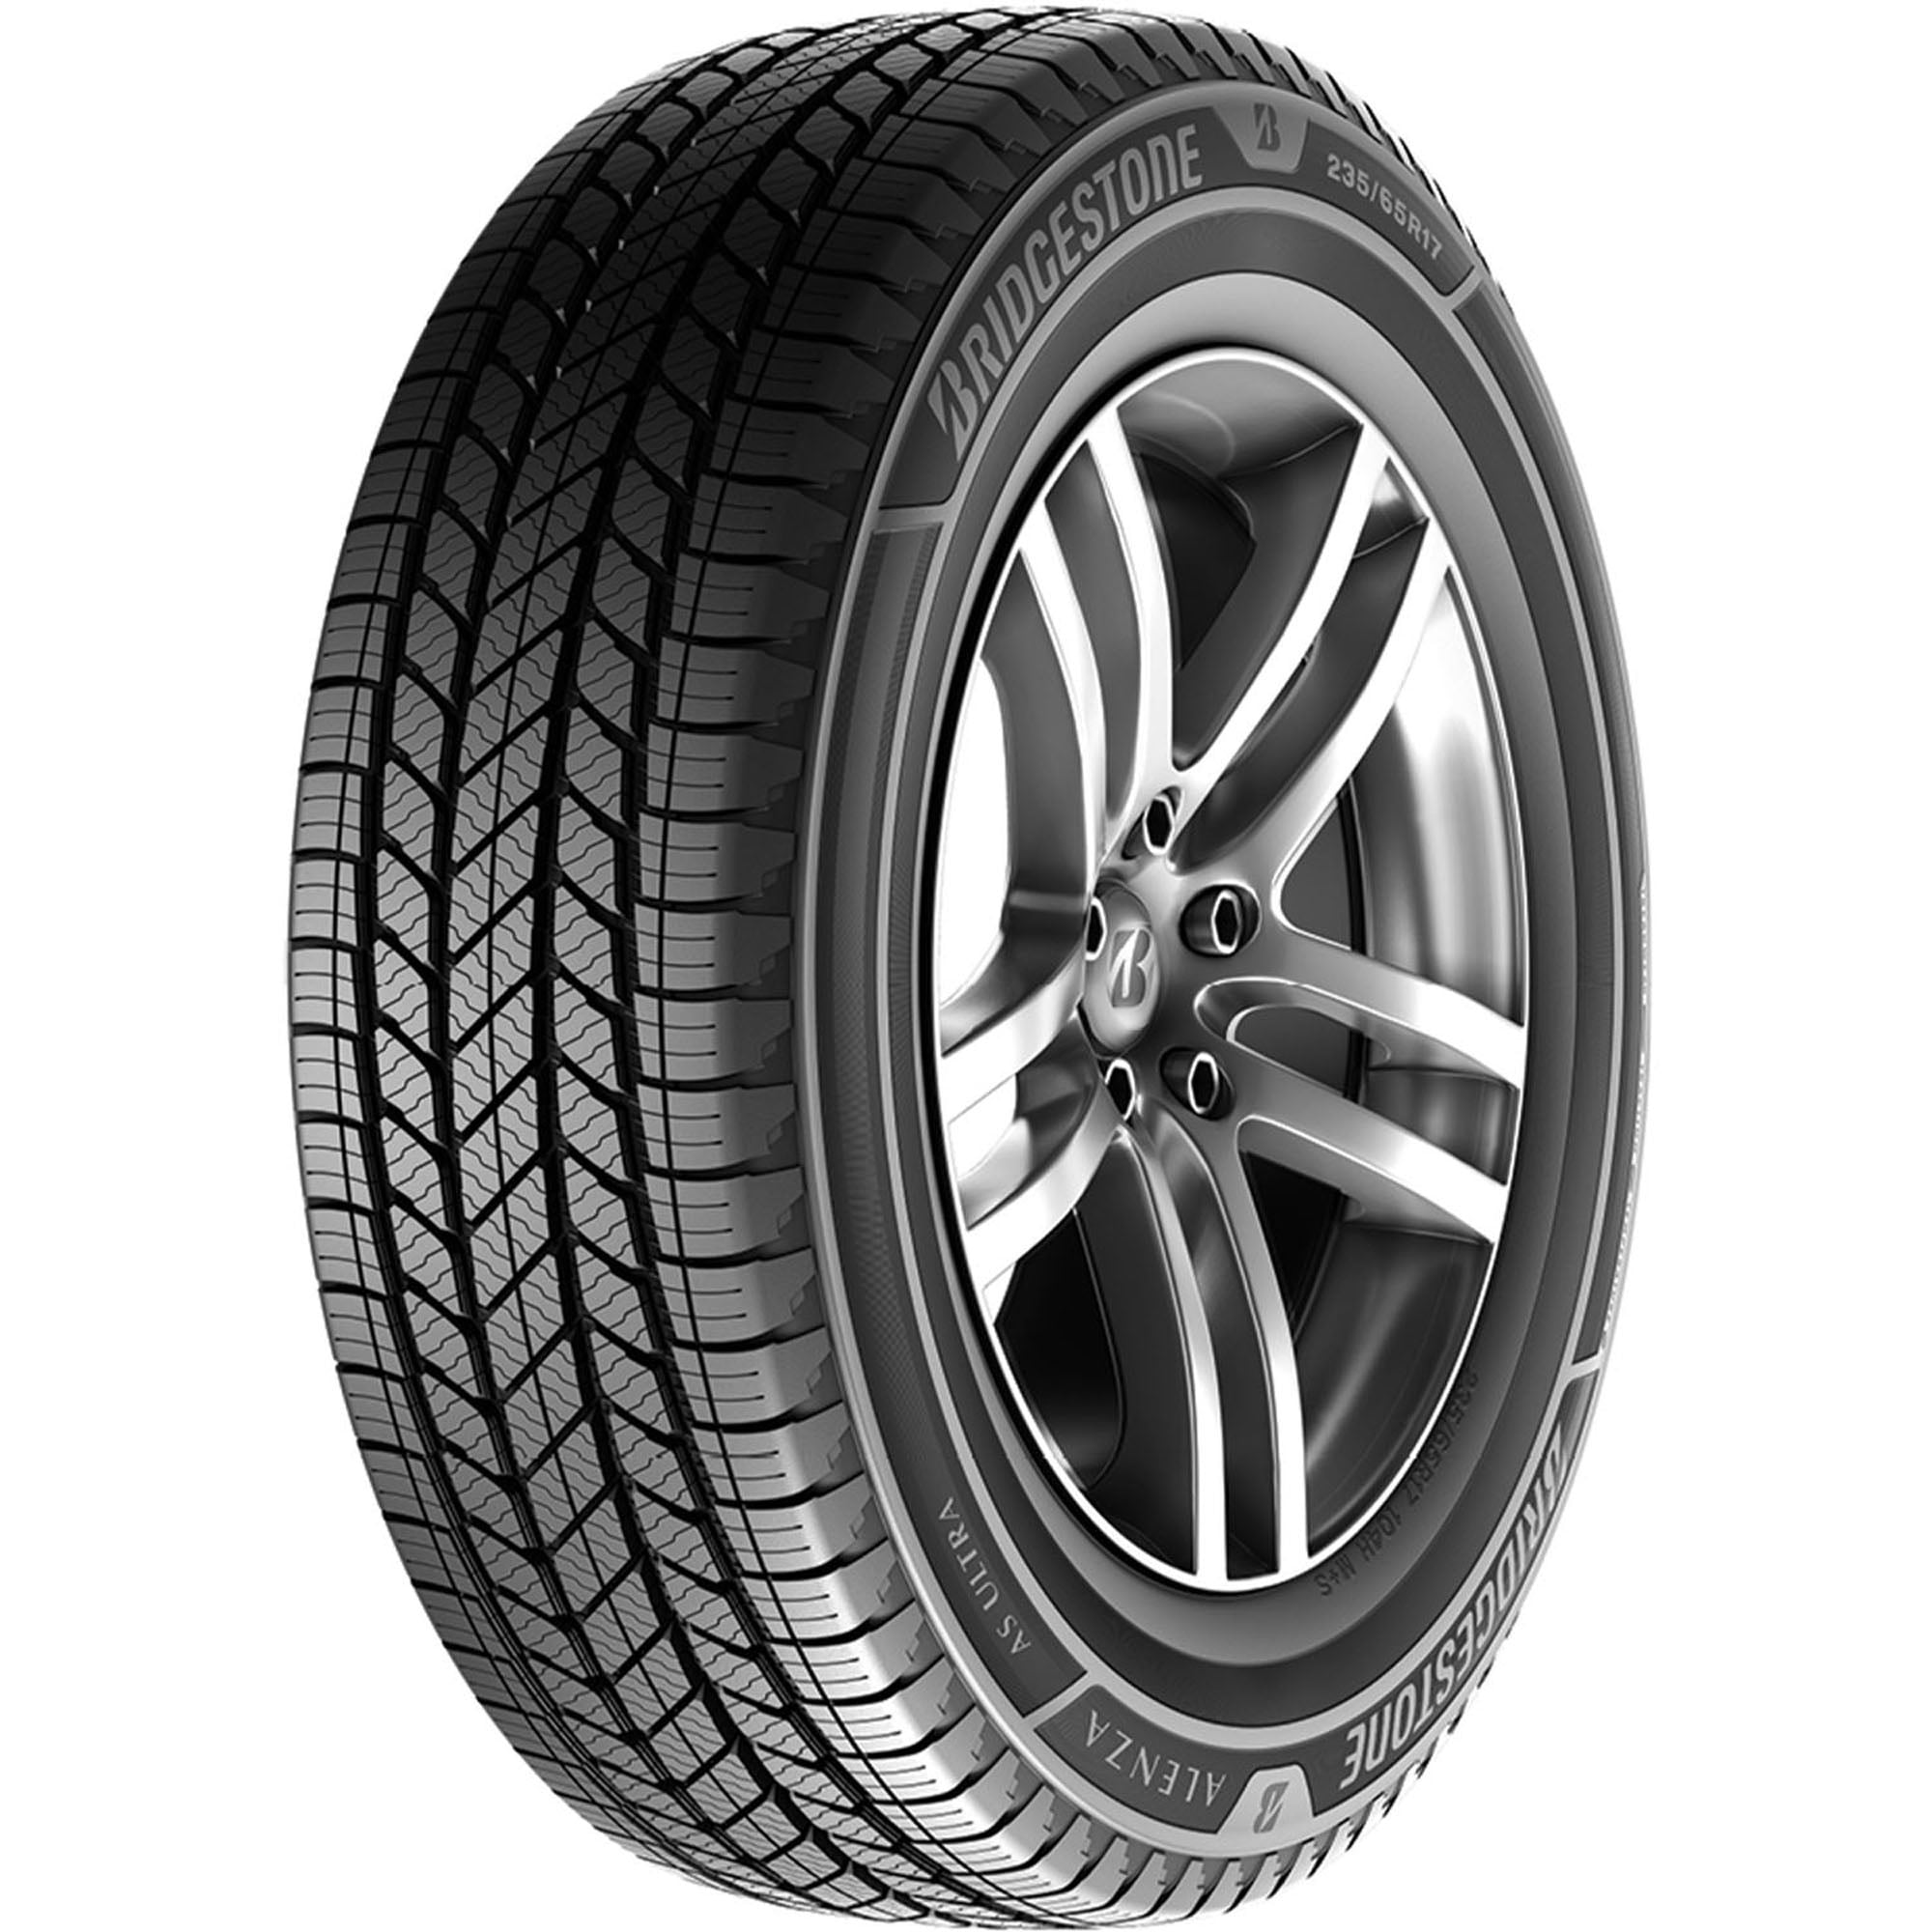 Bridgestone Alenza A/S Ultra All Season 255/60R18 112V XL SUV/Crossover  Tire